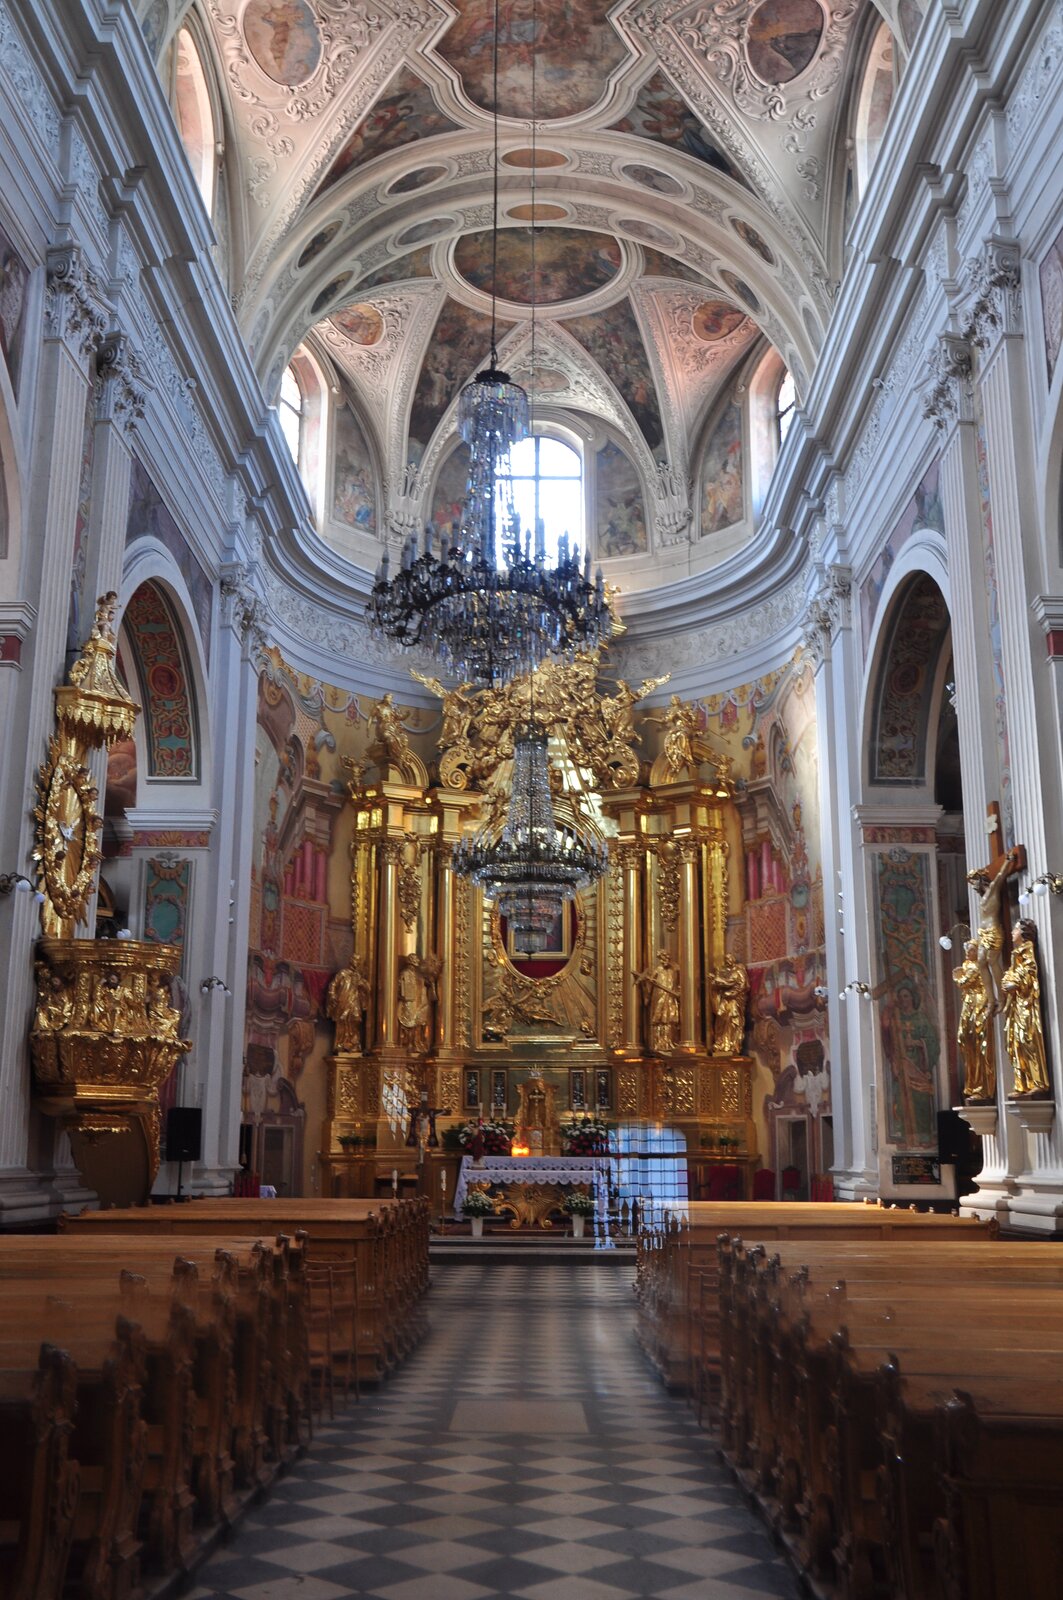 Wnętrze Kościoła pw św. Franciszka Ksawerego w Piotrkowie Trybunalskim. Na fotografii znajduje się widok na ołtarz, nawę główną oraz sklepienie. Ołtarz zajmuje całą szerokość nawy głównej, jest bogato złocony i rzeźbiony. Na ścianie bocznej kościoła widoczna jest złota ambona po lewej stronie, a po prawej – krucyfiks pomiędzy dwoma złotymi posągami. Sklepienie jest wypełnione malowidłami, zwisają z niego również kryształowe żyrandole. Tuż pod sklepieniem umieszczone są otwory okienne zwieńczone półokrągłym łukiem. W nawie znajdują są także drewniane ławki stojące w dwóch rzędach.